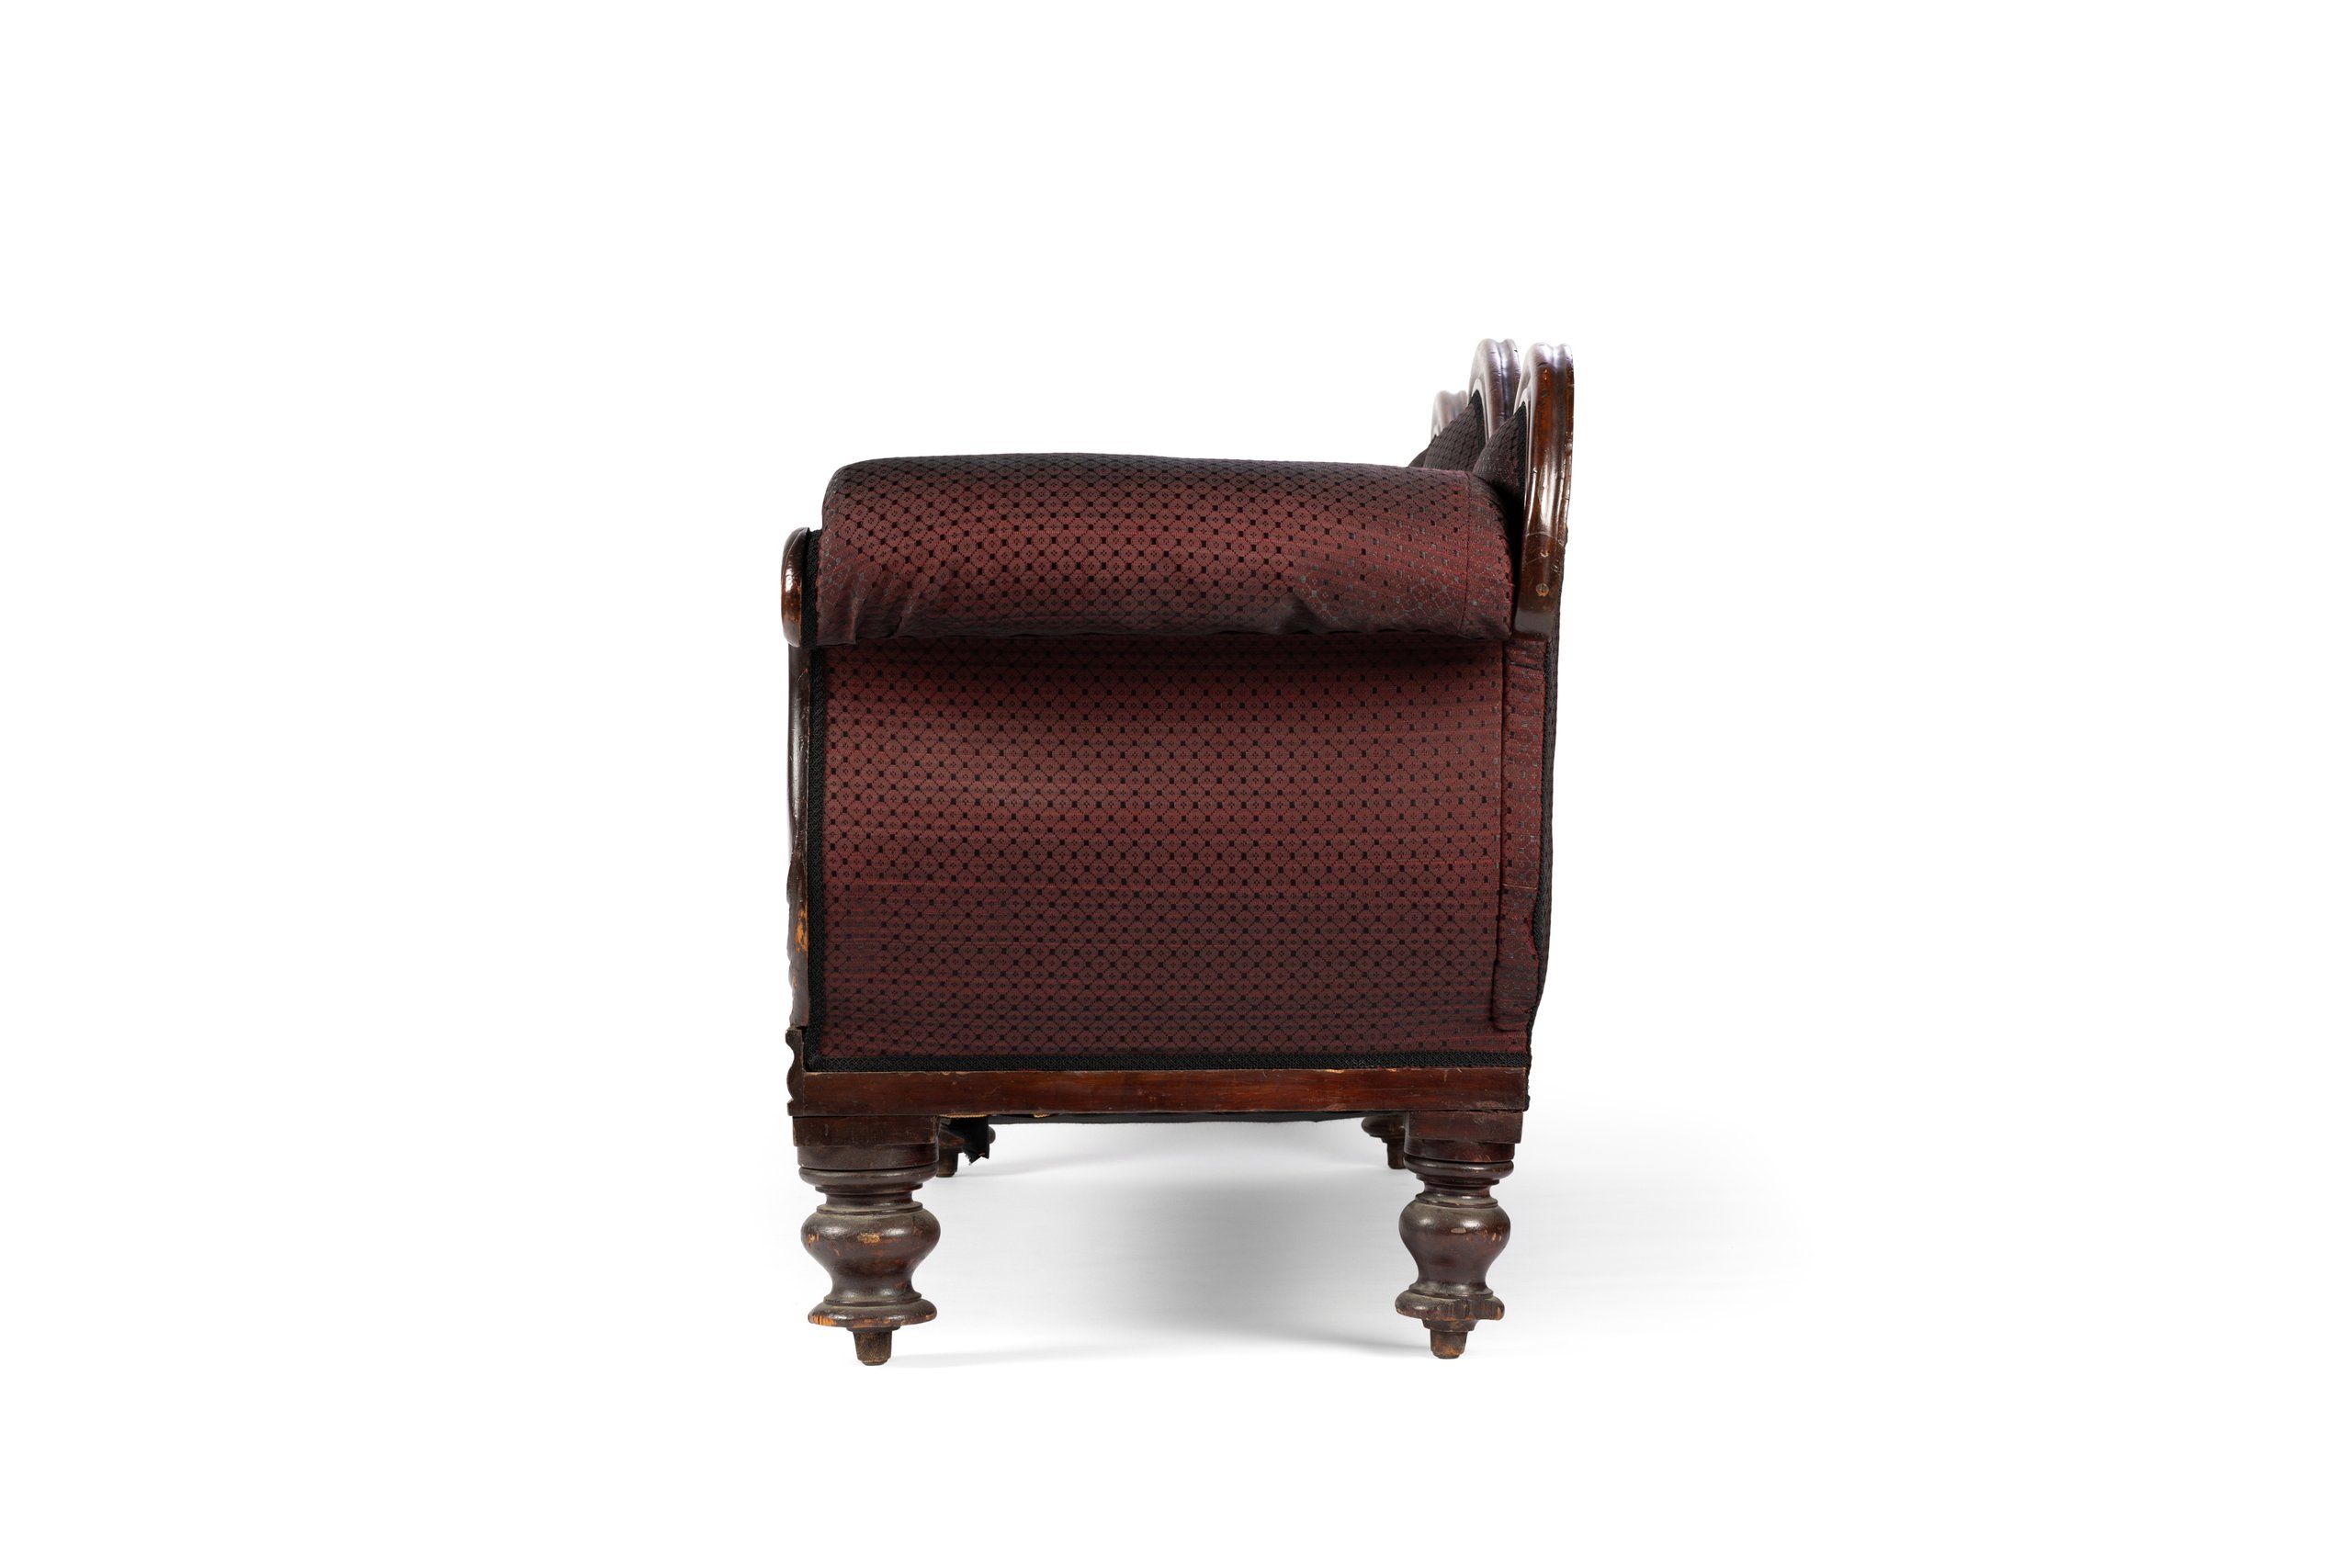 Mahogany sofa from the 19th century